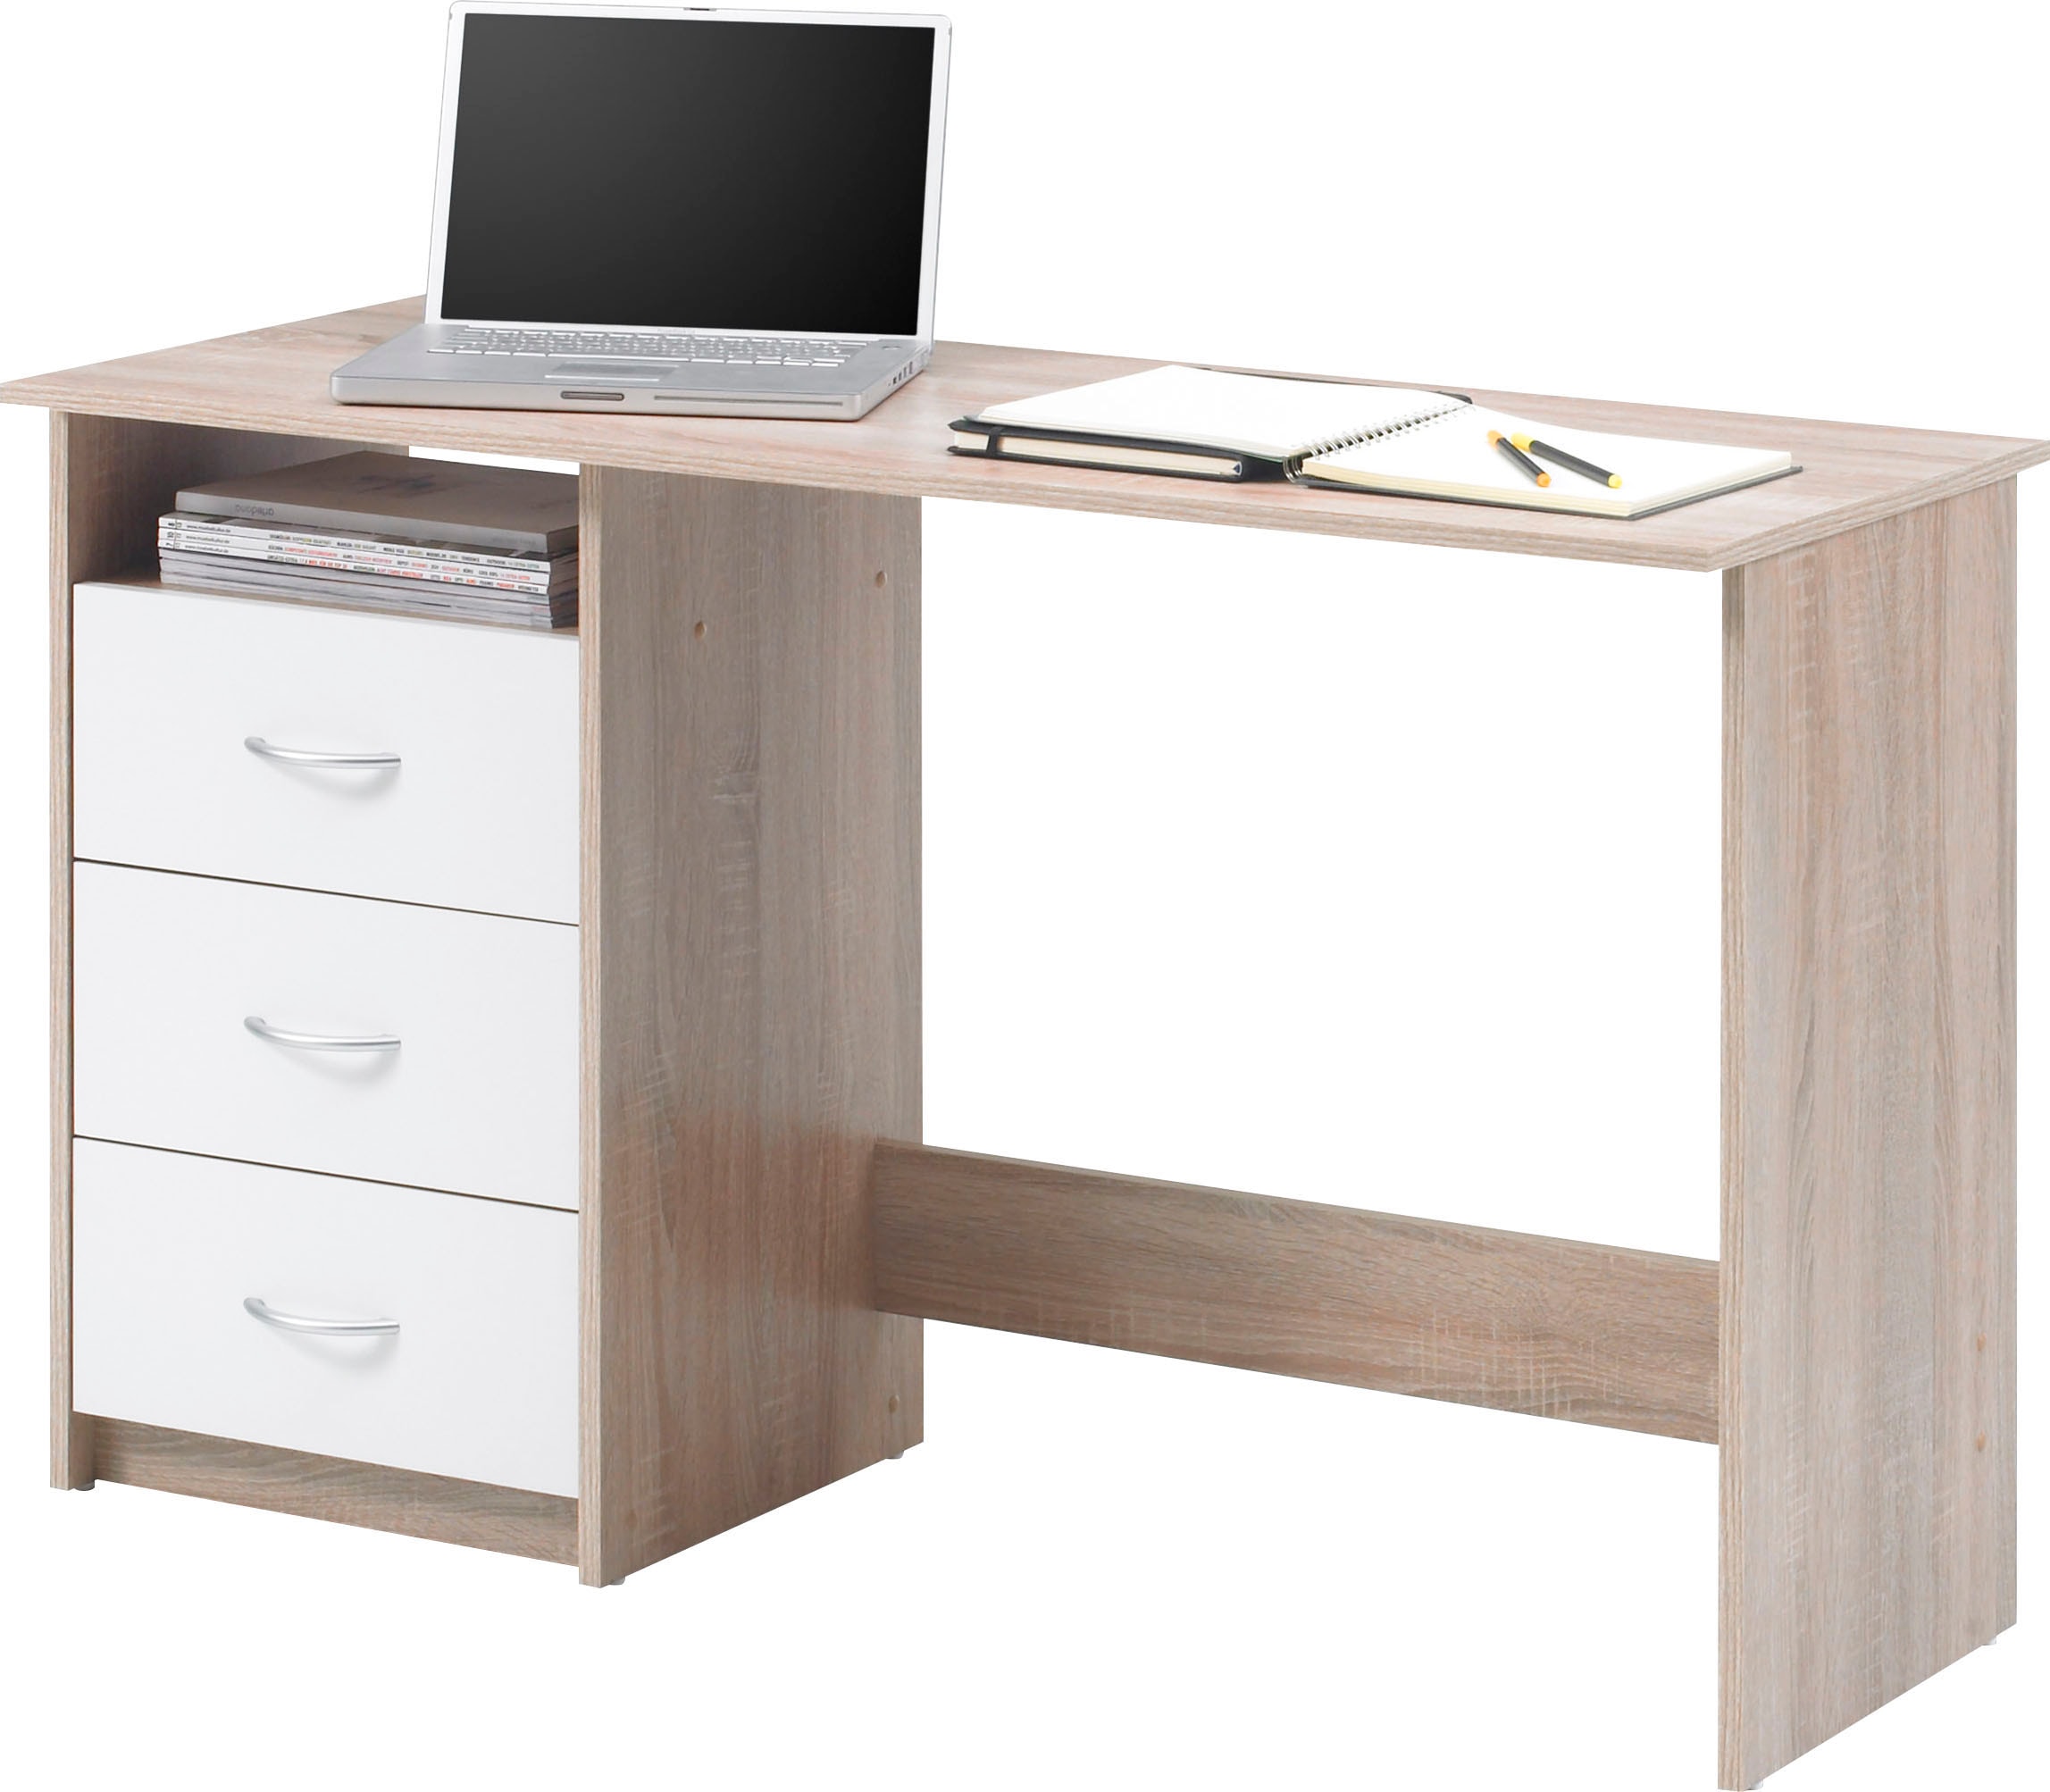 BEGA OFFICE »Adria«, Schreibtisch links OTTO montierbar Rechts Schubkasten mit kaufen oder bei abschließbar, Schubkästen